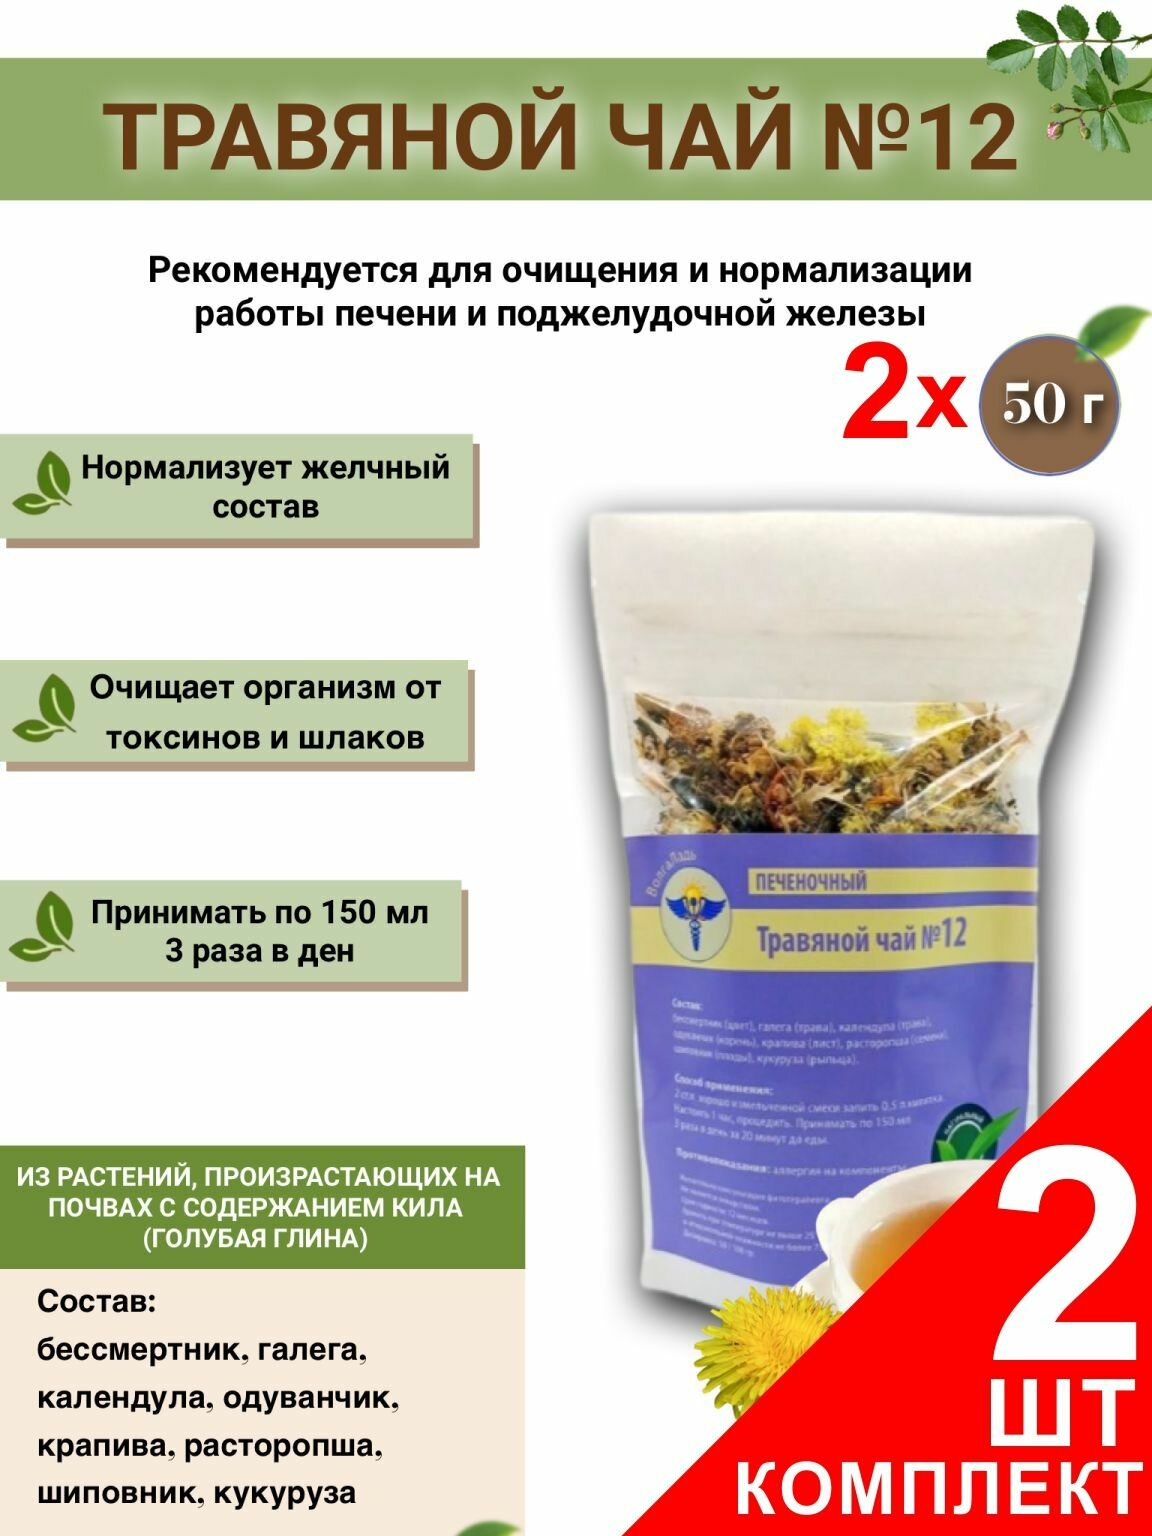 Травяной чай Волгаладь № 12 Печеночный , набор из 2 упаковок (Курс лечения)